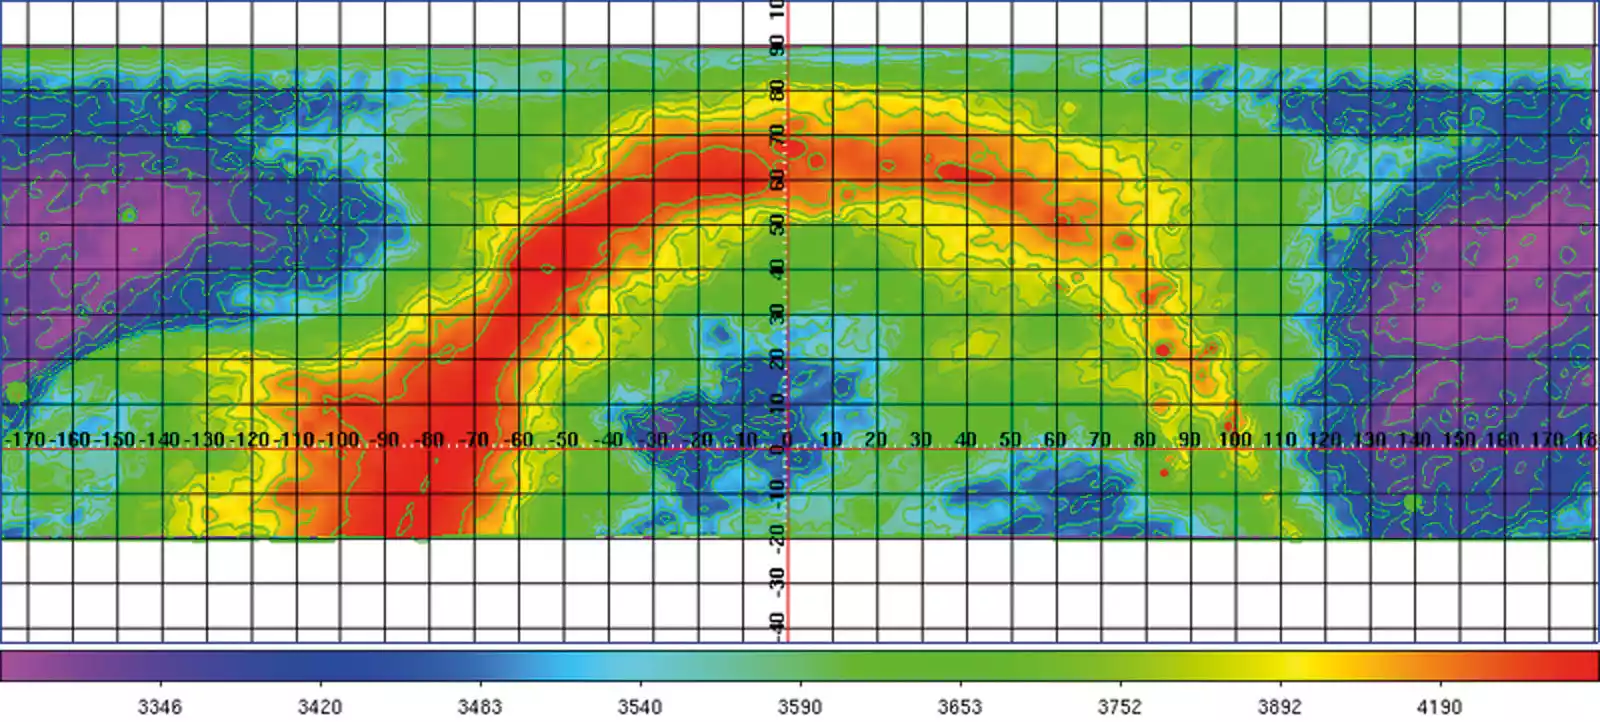 Auswertungsdiagramm für die Daten des Radioteleskop der Sternwarte Radebeul